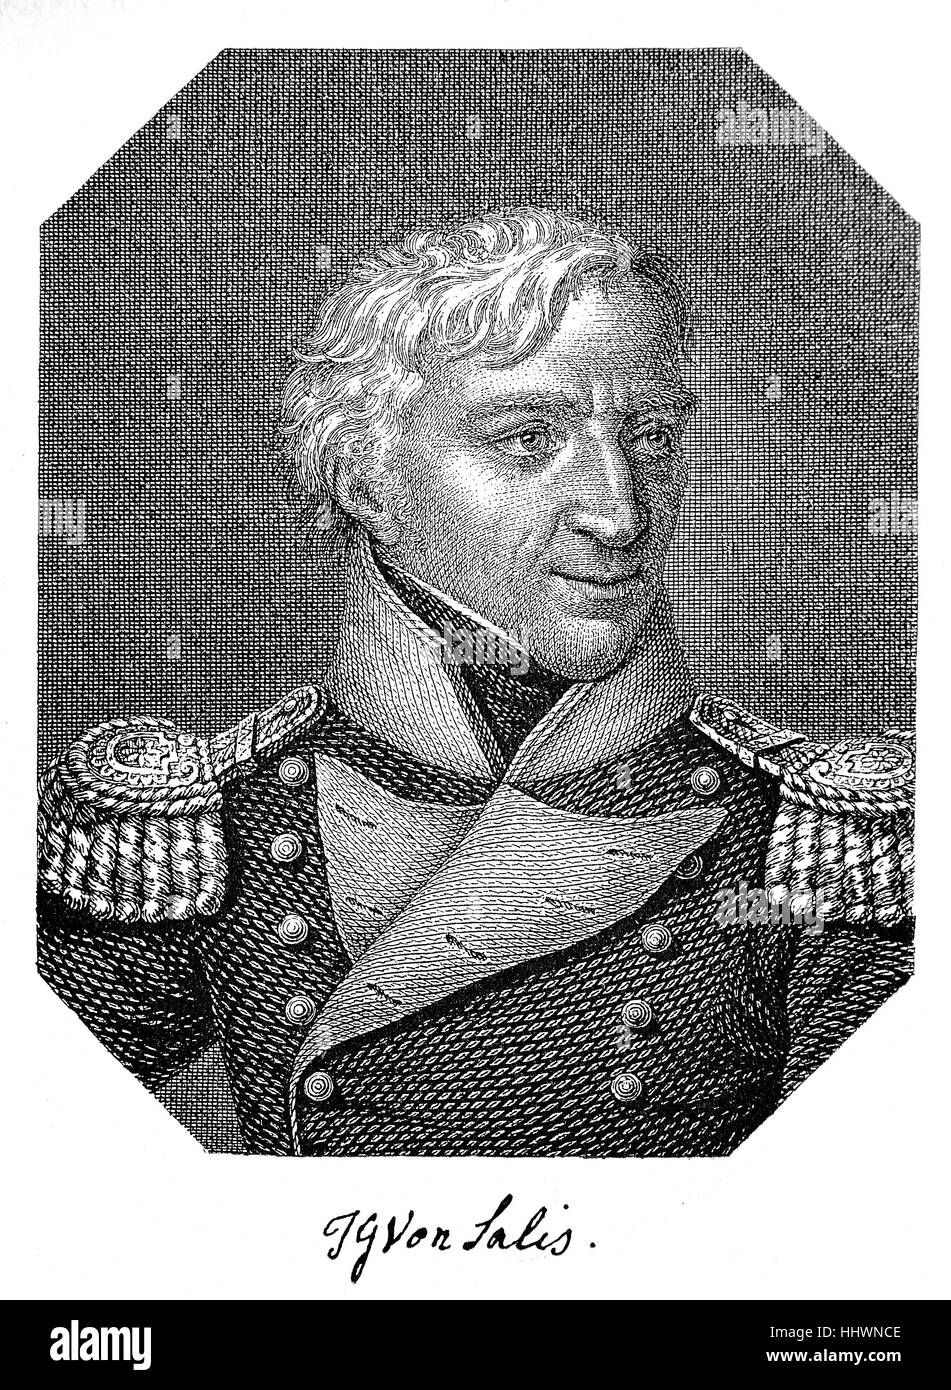 Johann Gaudenz Gubert Graf und Freiherr von Salis-Seewis, né le 26 décembre 1762, Malans; mort le 29 janvier 1834, Malans, était poète suisse, image historique ou illustration, publié en 1890, Digital Improved Banque D'Images